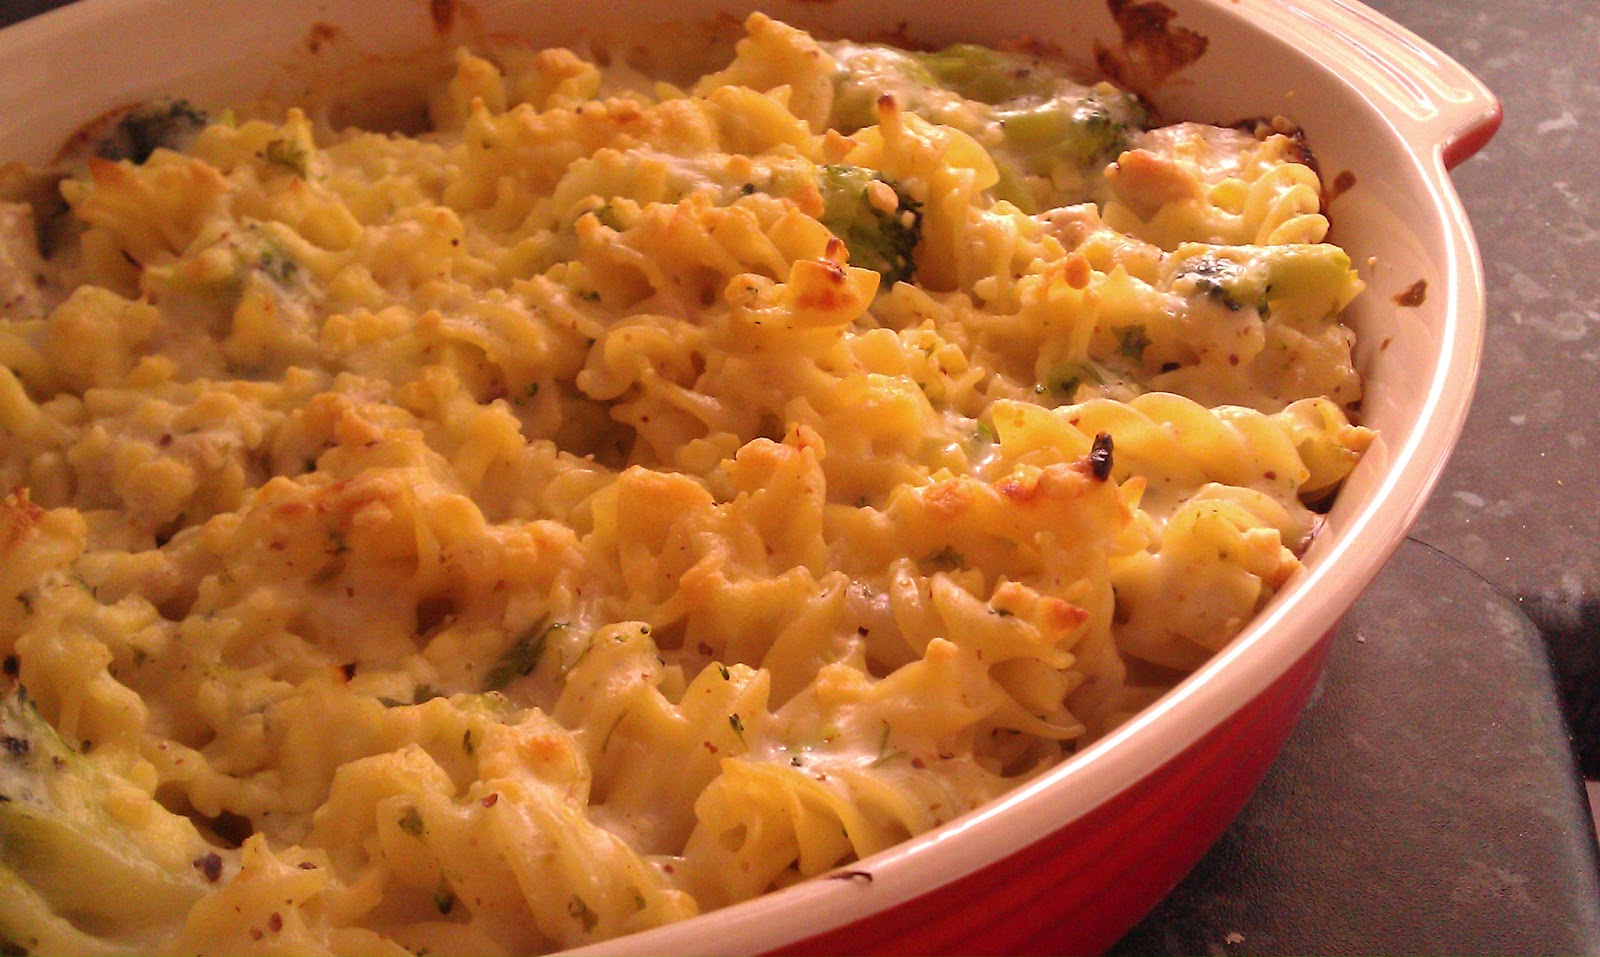 Anne's Kitchen: Creamy Turkey and Broccoli Pasta bake